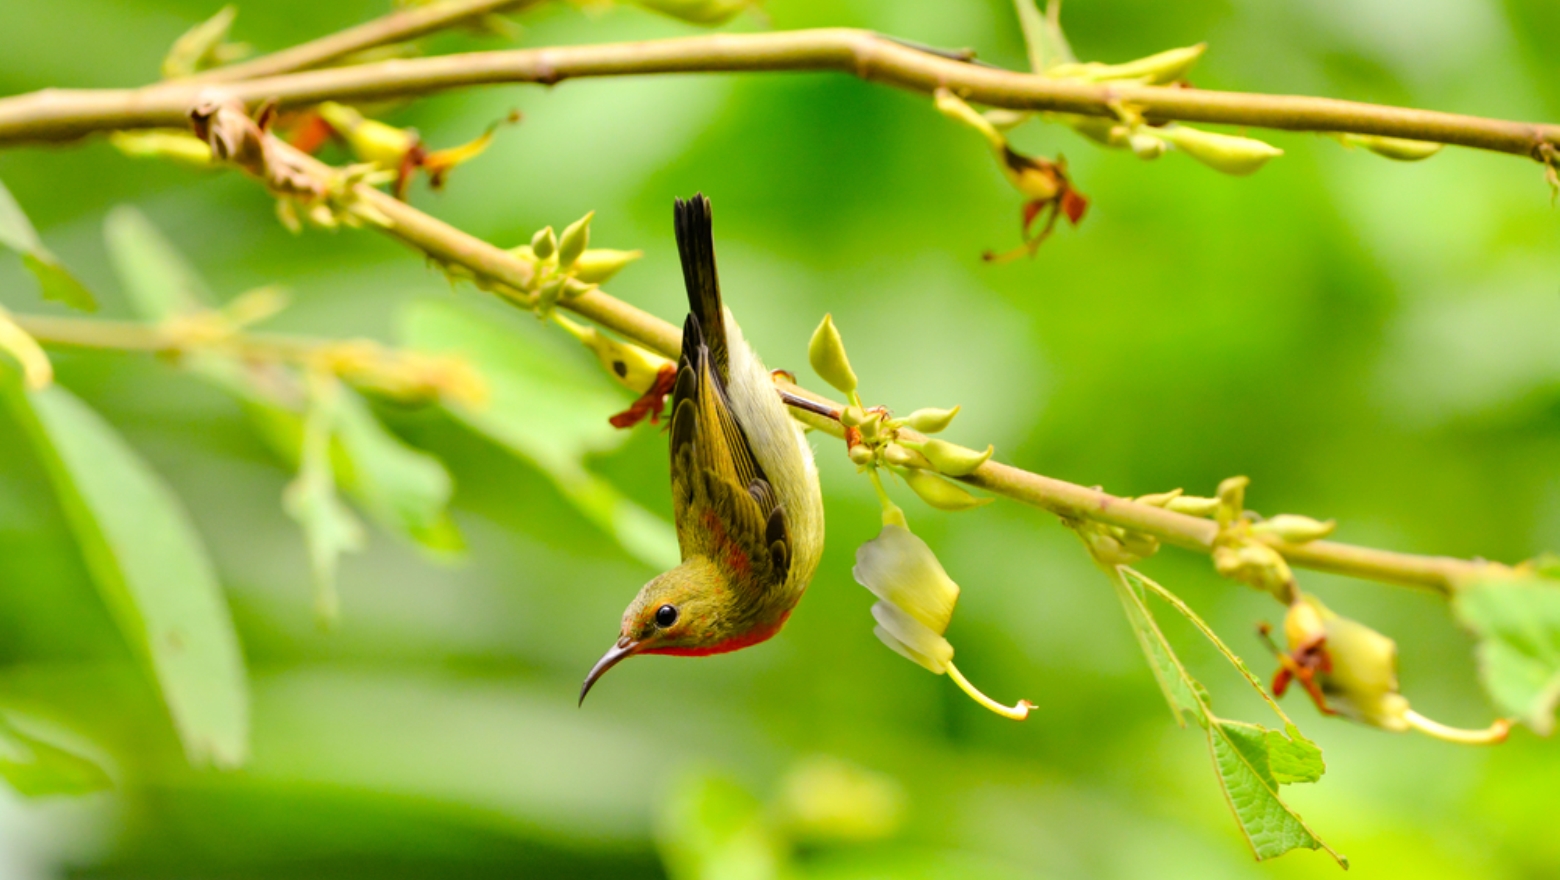 Sunbirds are naturally curious. Image via Shutterstock.com